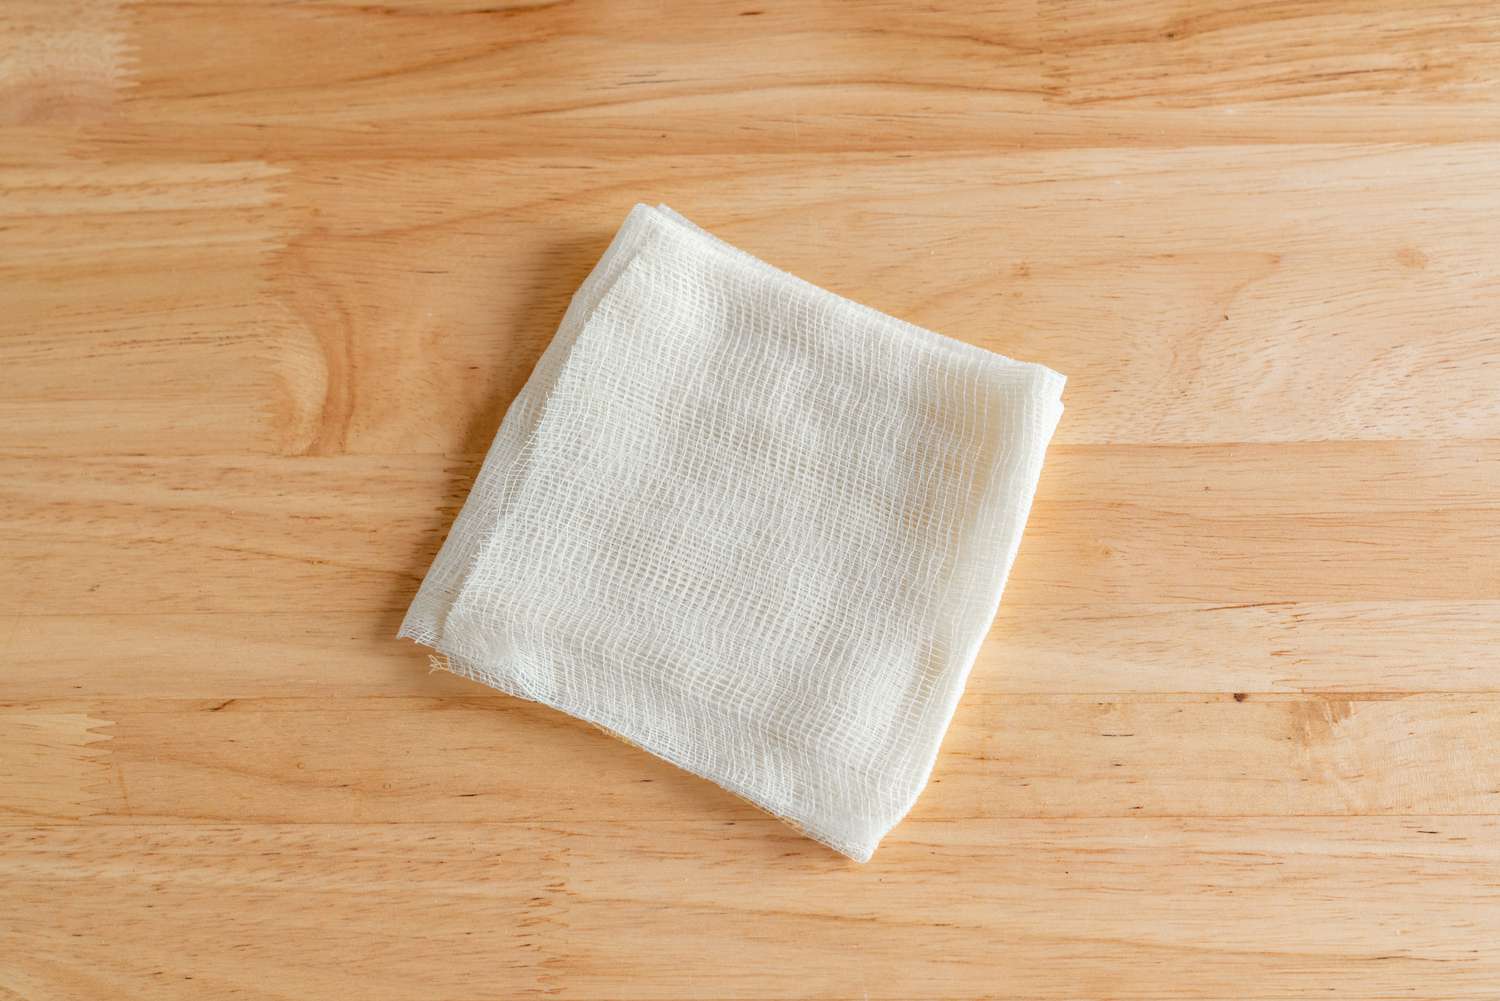 Toalha de prato de algodão branco dobrada sobre superfície de madeira